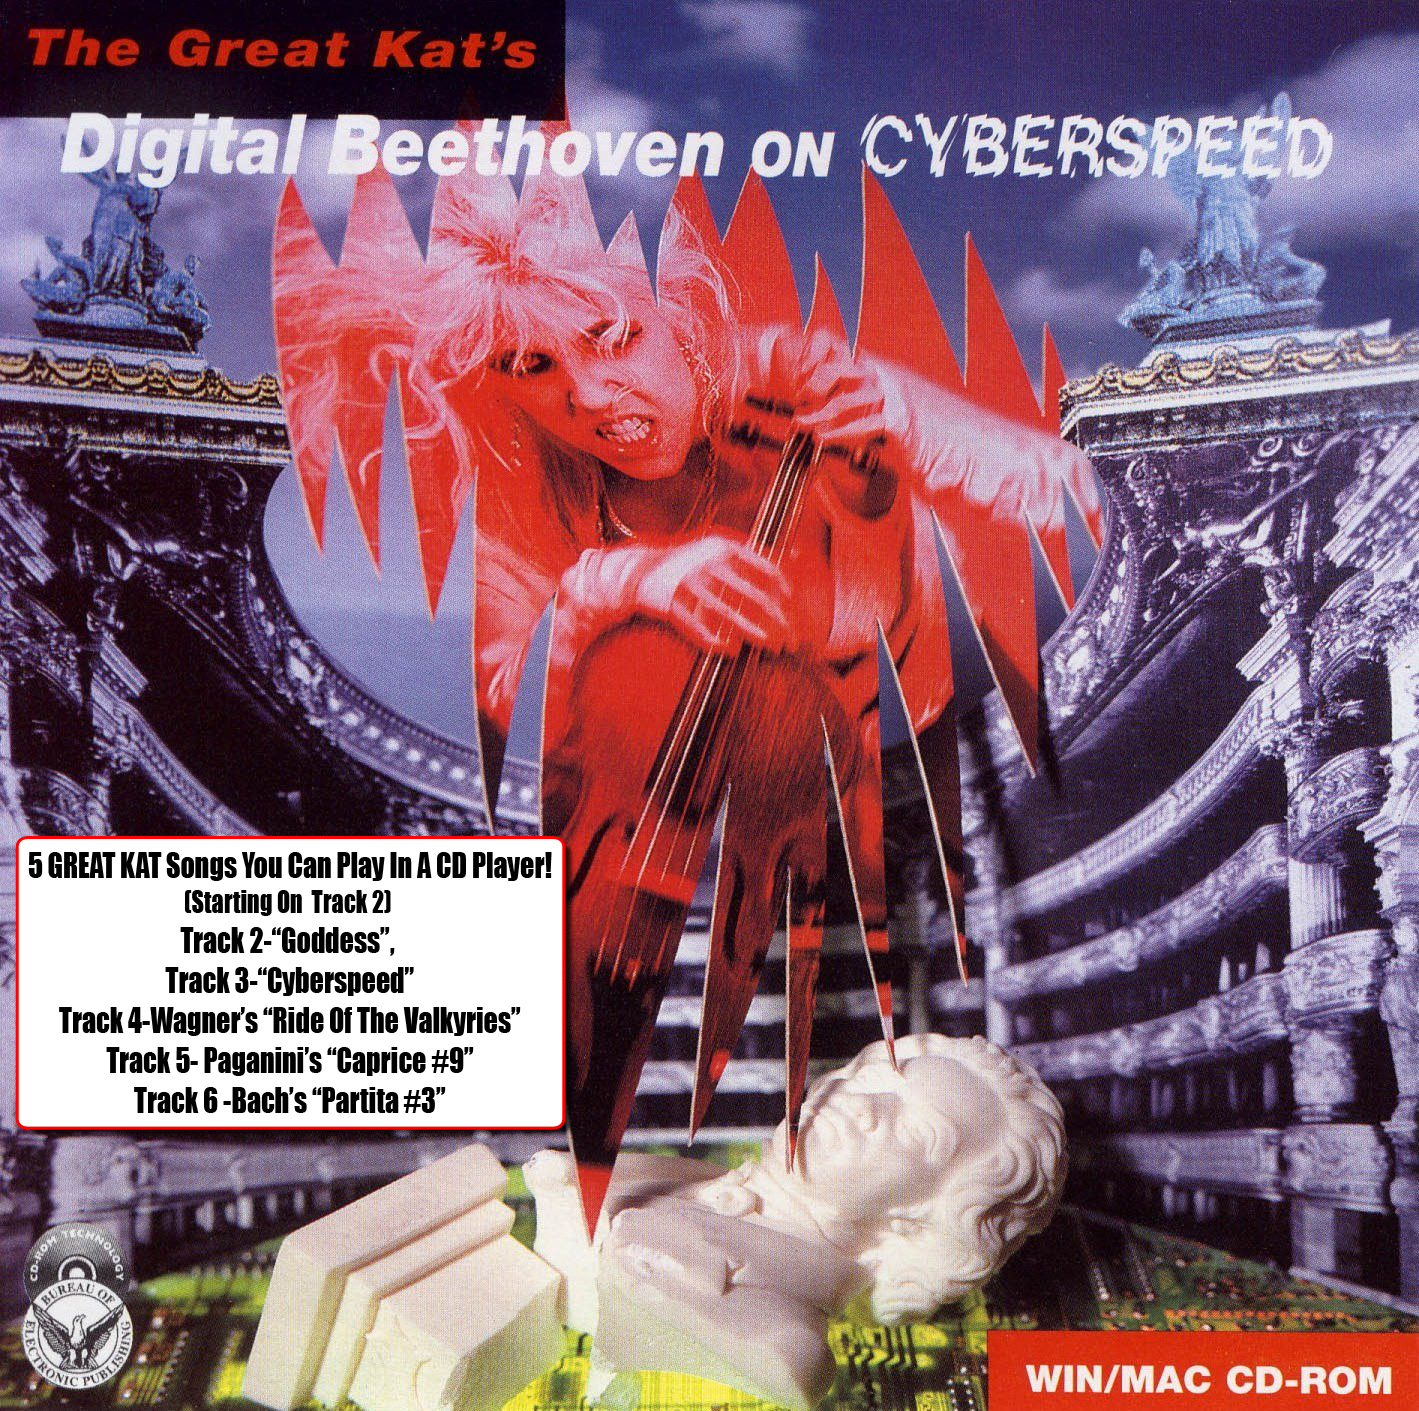 "DIGITAL BEETHOVEN ON CYBERSPEED" CD-ROM!